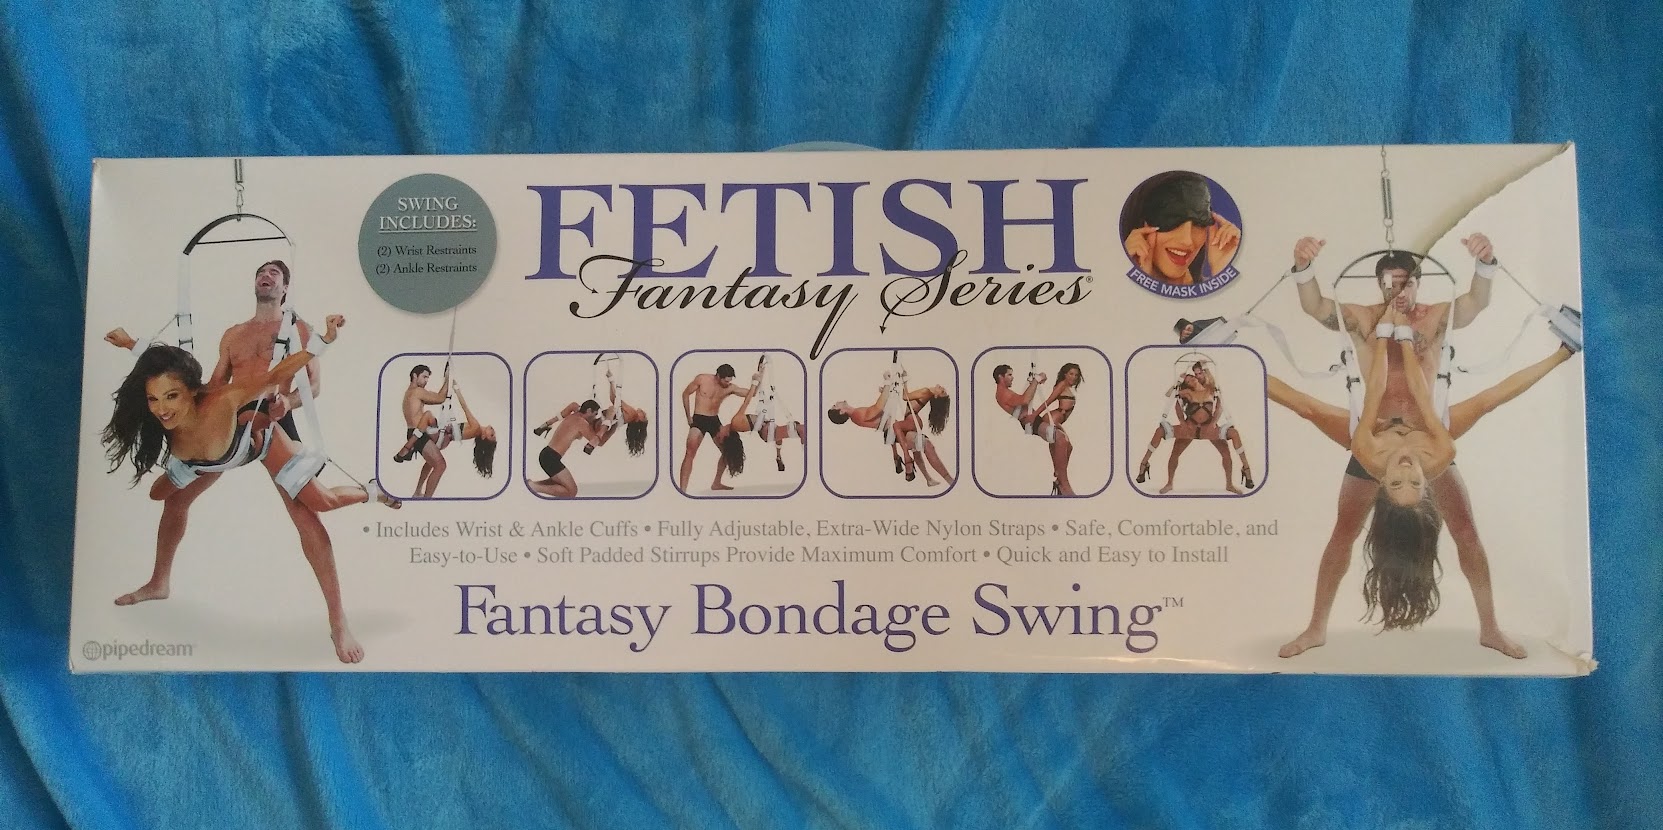 Fetish Fantasy Bondage Swing The Fetish Fantasy Bondage Swing: An Analysis of Packaging